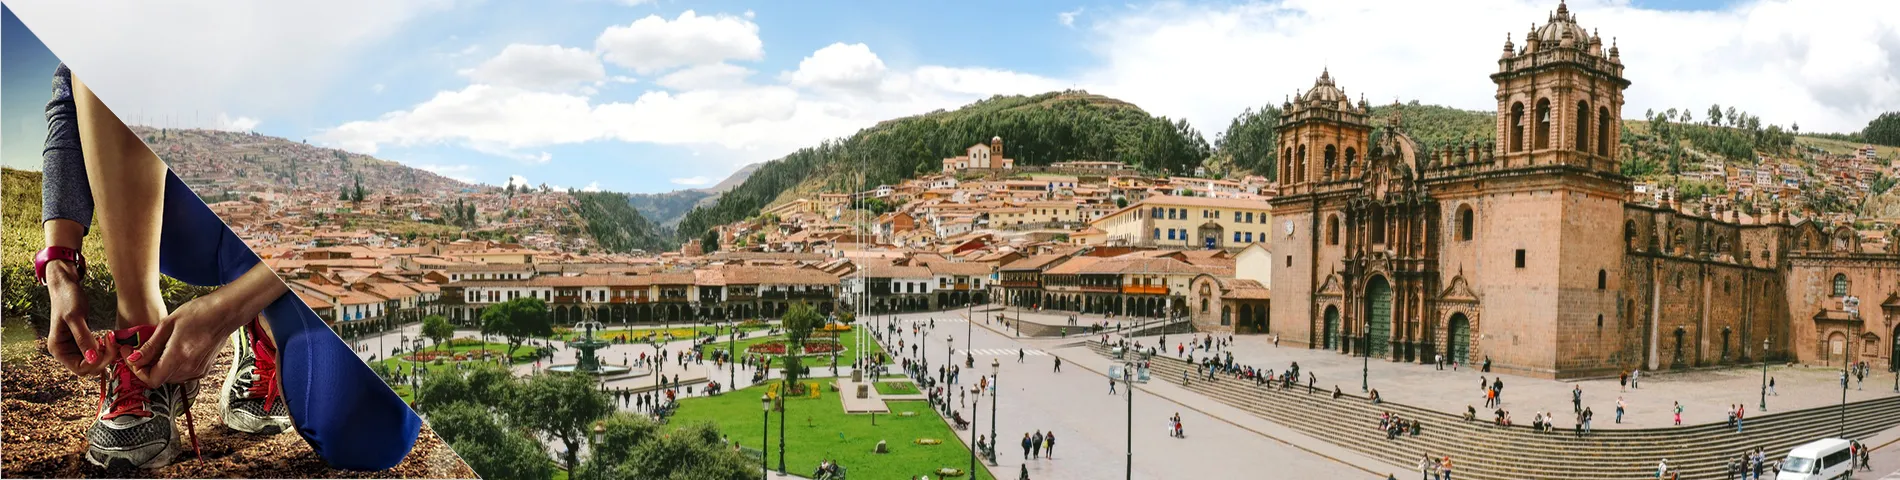 Cuzco - Španielčina a iné športy